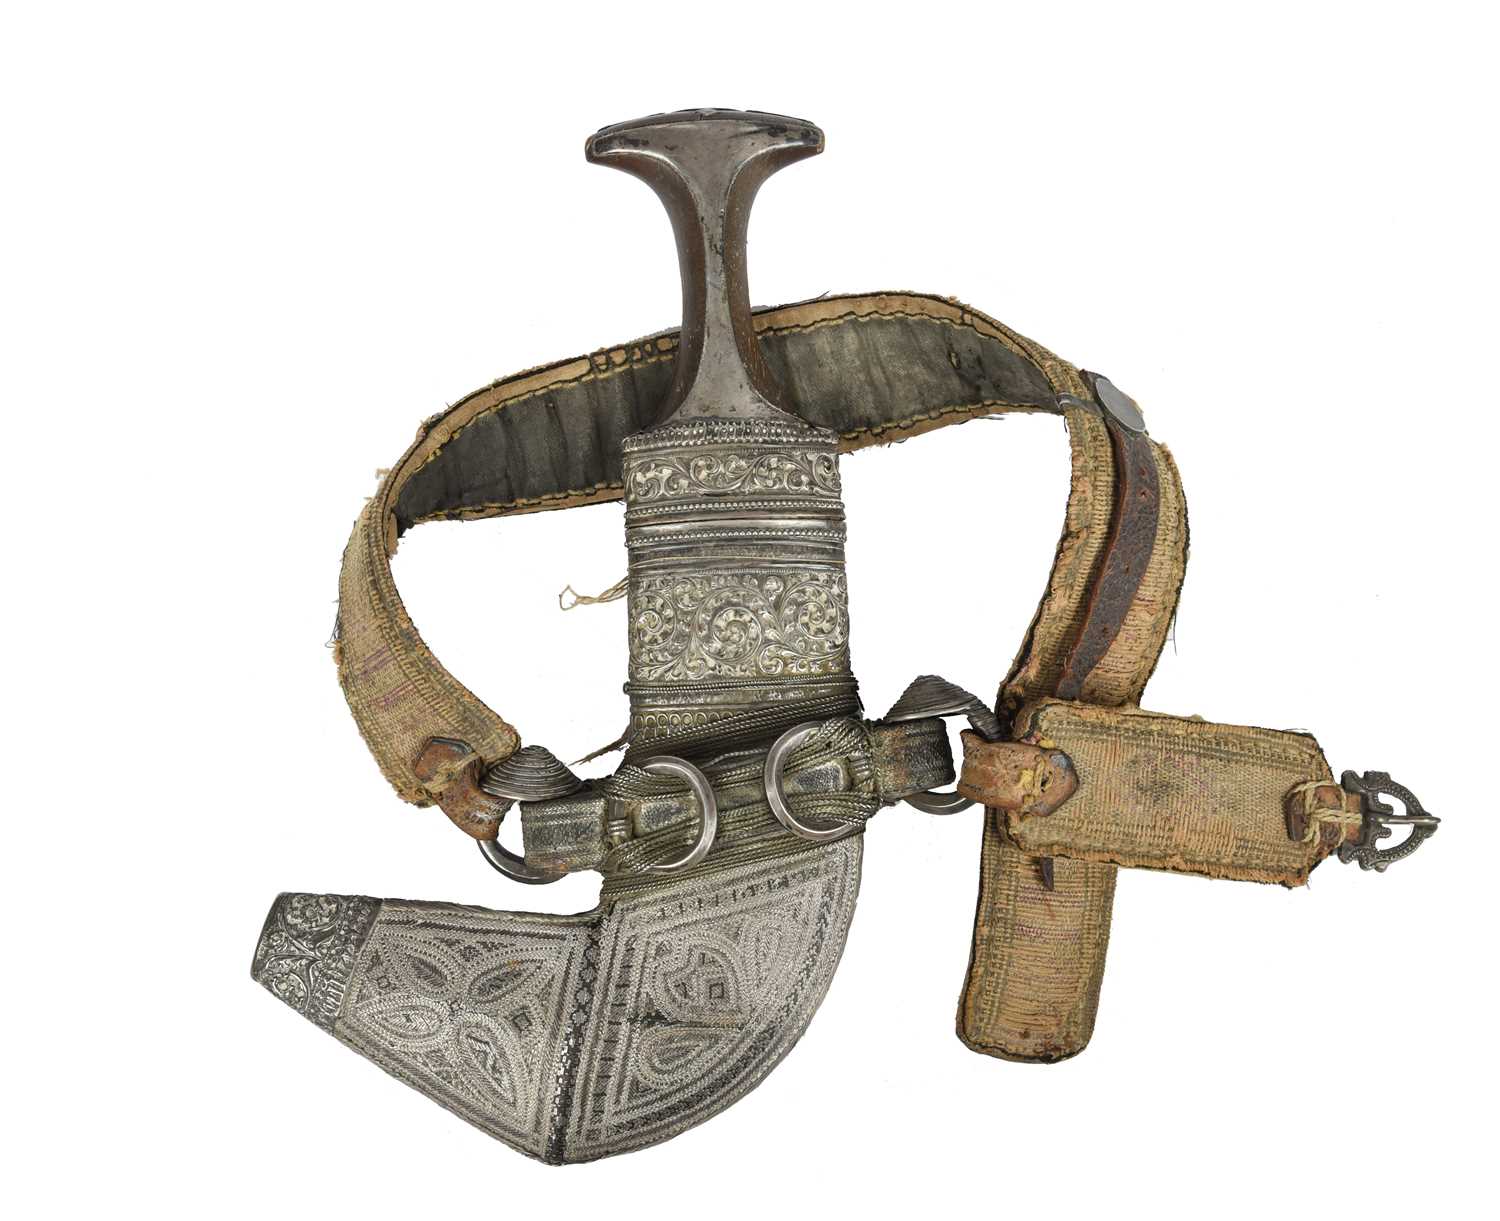 λ An Omani dagger (jambiya), broad curved blade 6.5 in. rhinoceros horn hilt with embossed silver